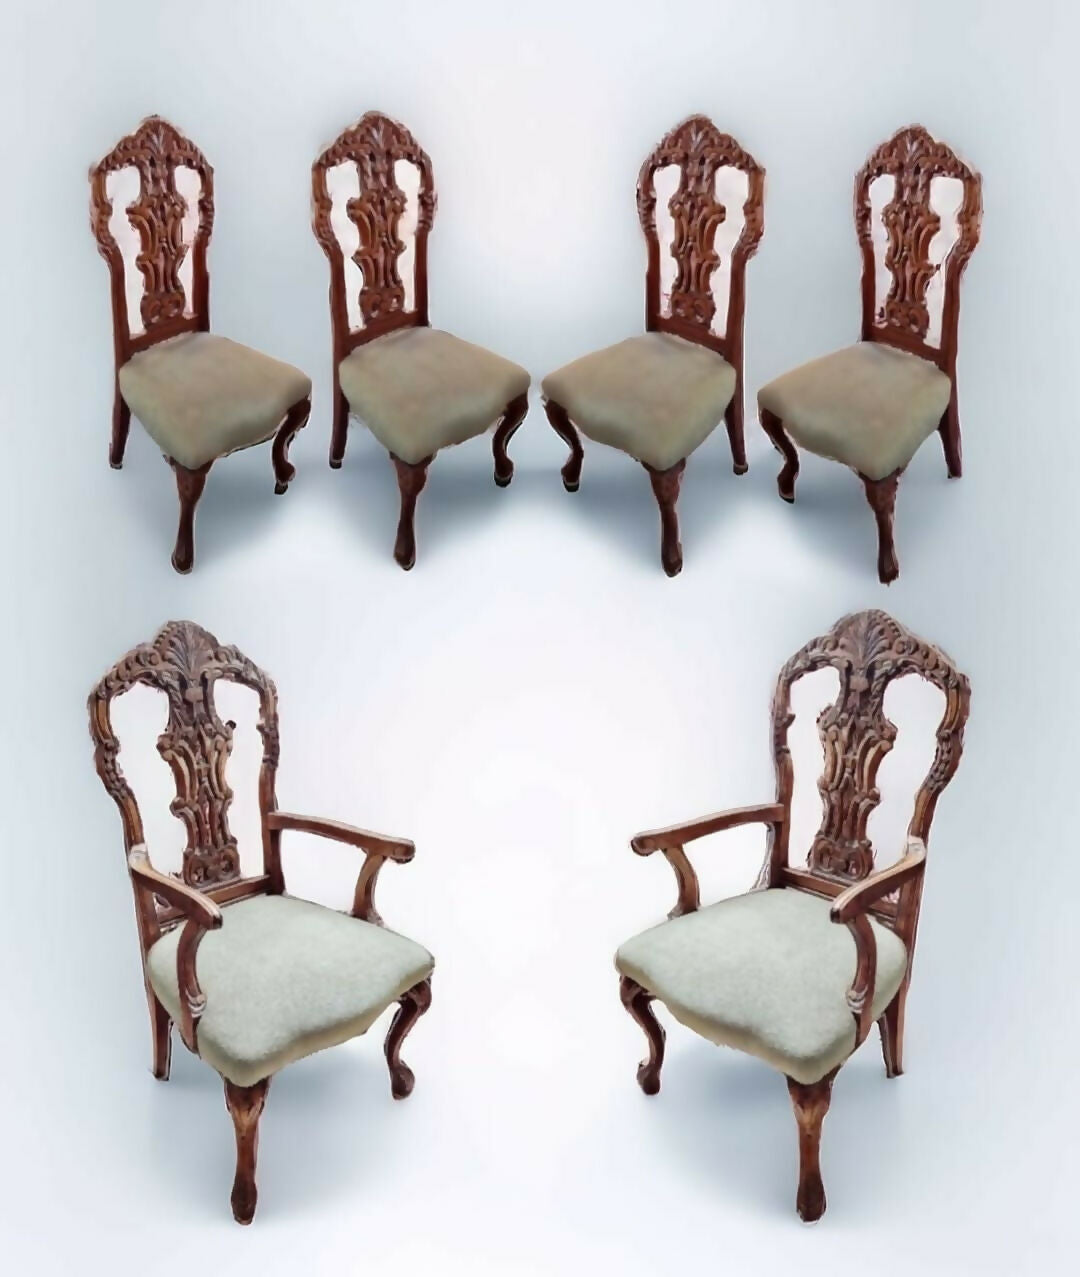 Conjunto de sala de jantar contendo 4 cadeiras e 2 poltronas em madeira entalhada no estilo inglês Chipandale